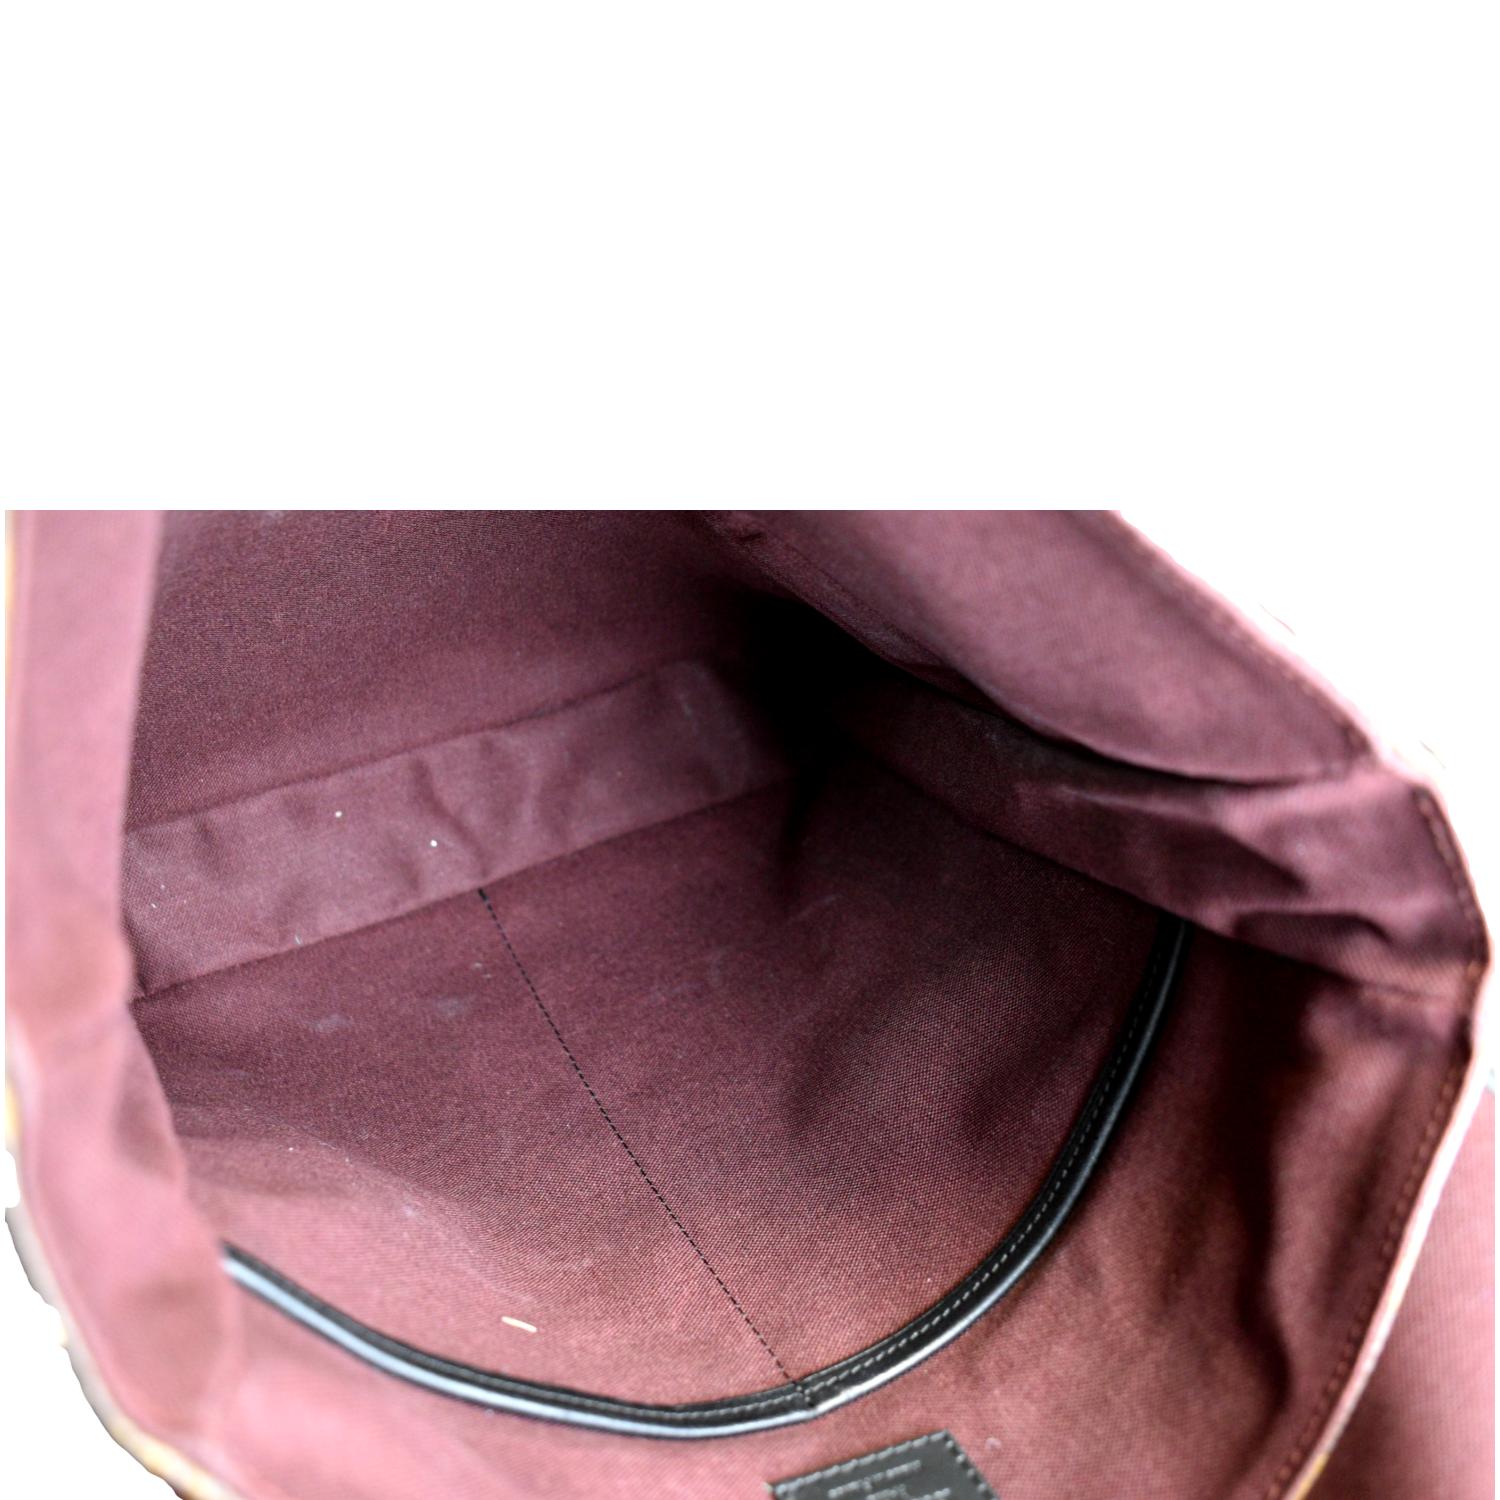 Louis Vuitton Monogram Macassar Bass MM - Brown Messenger Bags